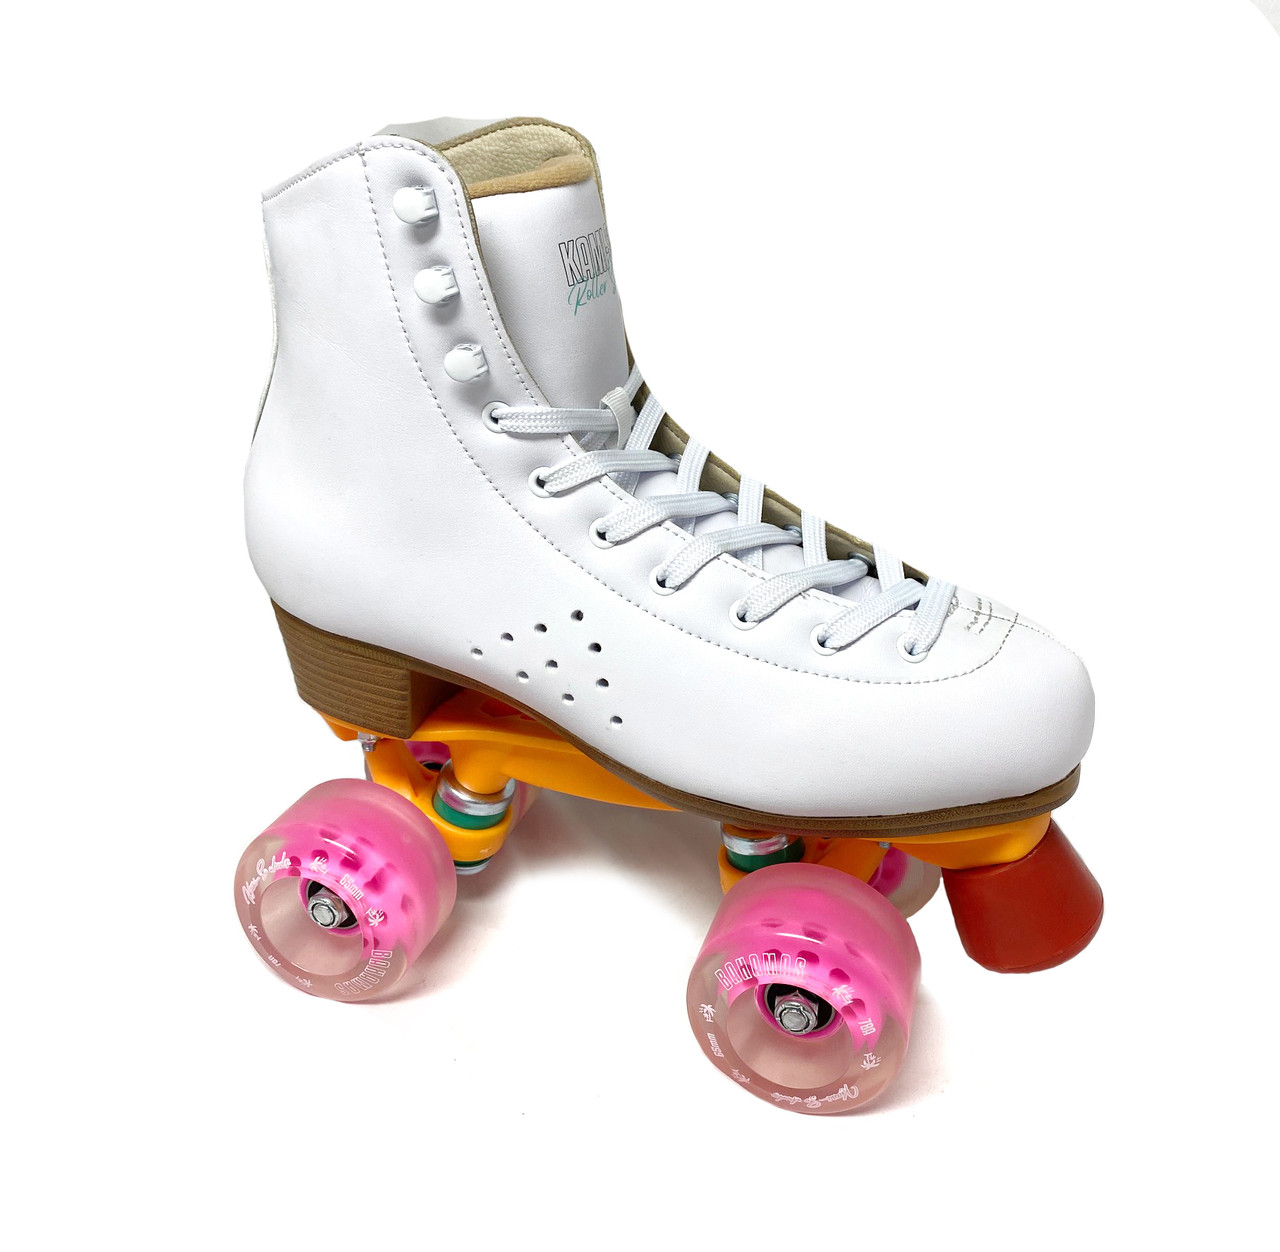 Kami-So Quad Roller Skates, White - Size US WOMEN 9 Only -  FigureSkatingStore